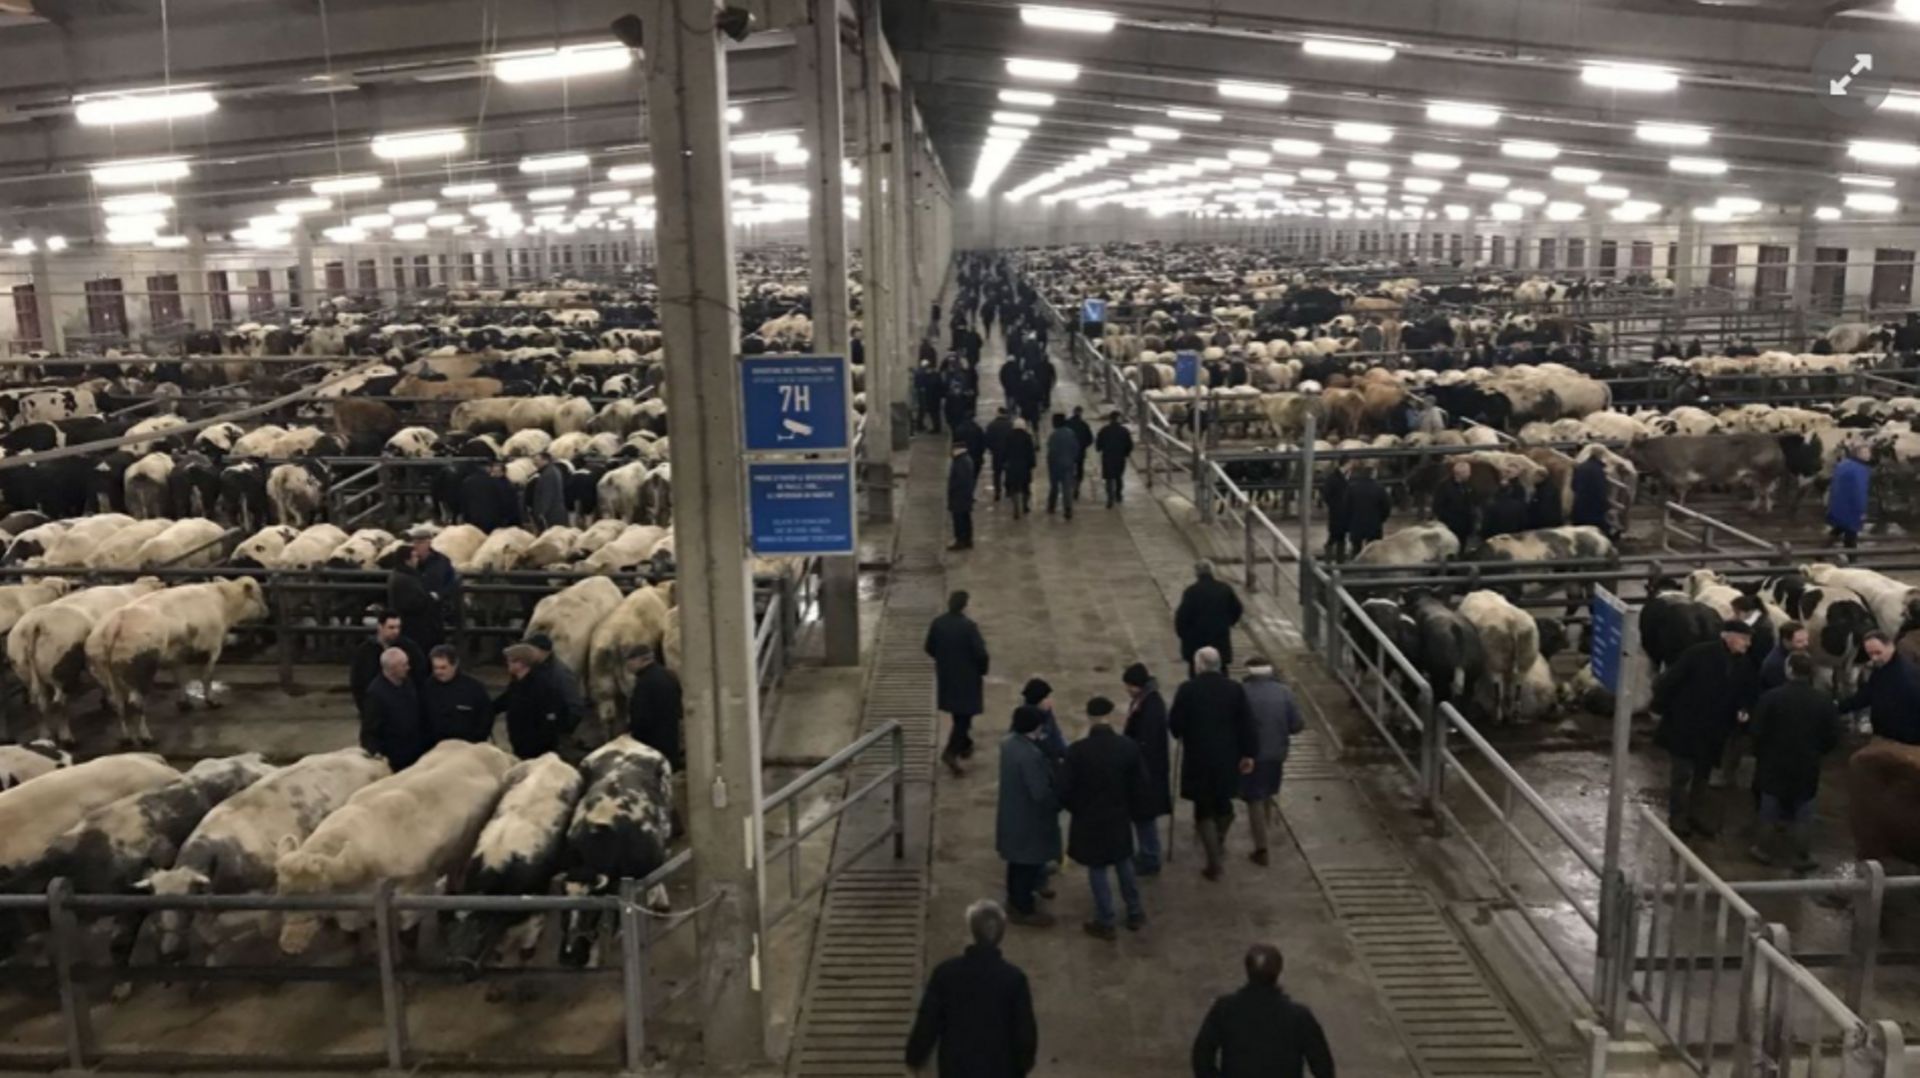 Les ventes ont plongé cette année au plus grand marché aux bestiaux de Belgique